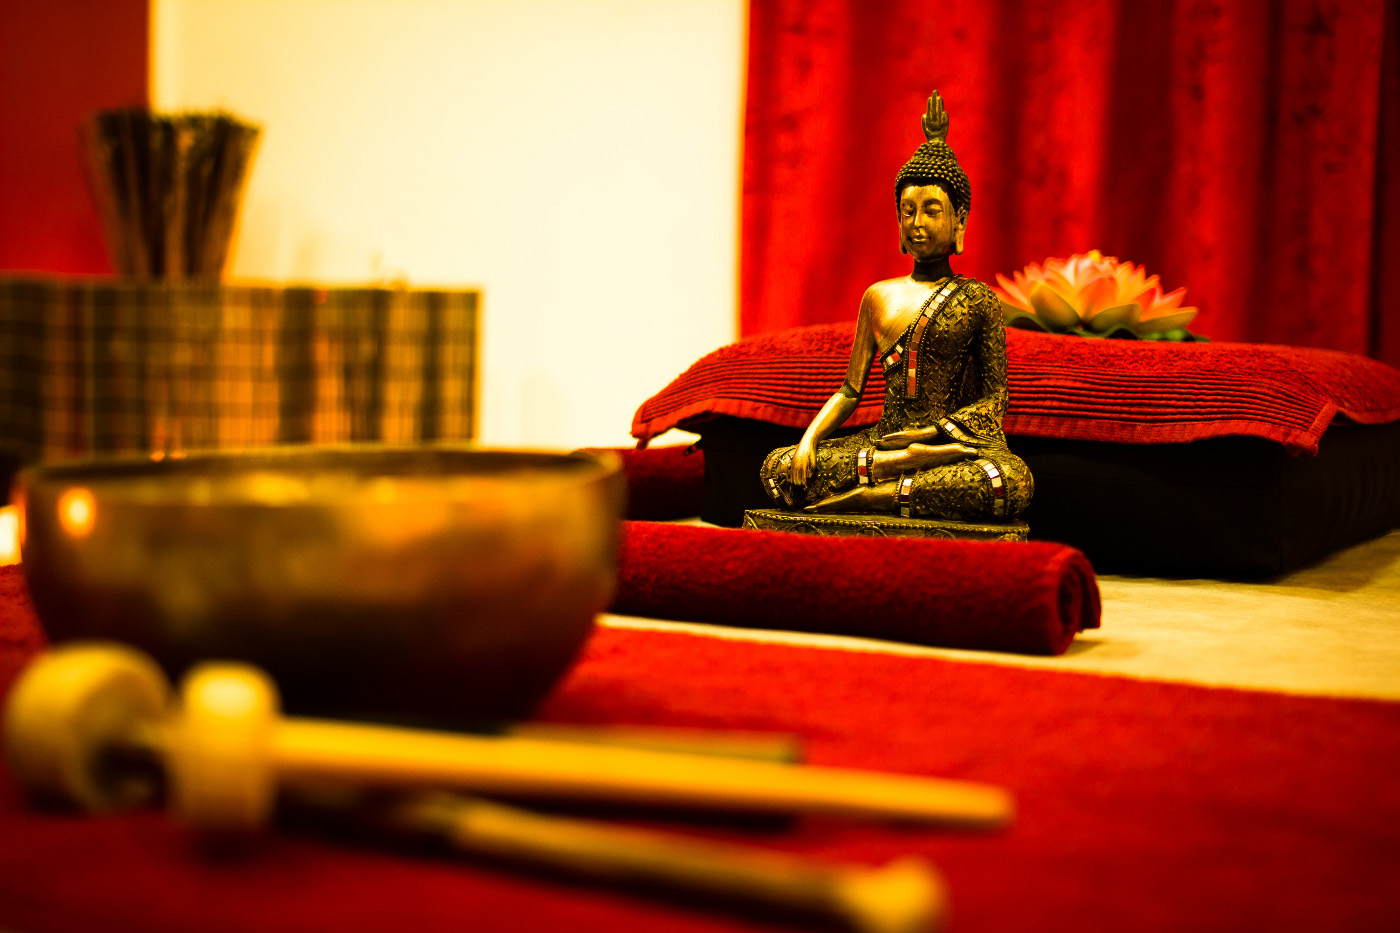 Massageliege mit Buddha und Klangschale